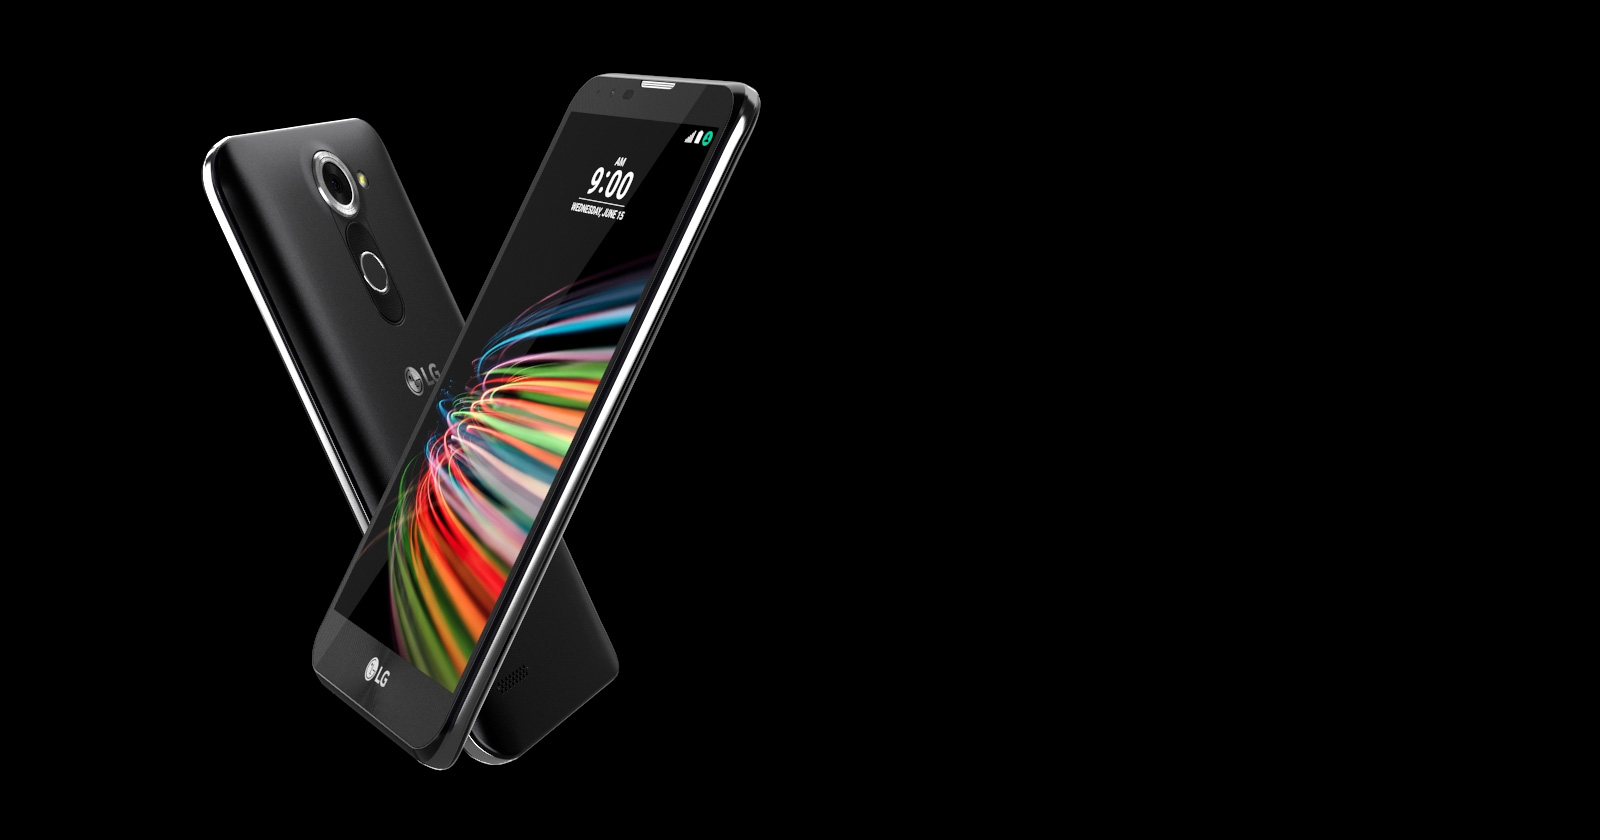 LG X Mach je vyroben z plastu, ale to je tak jediné, co lze tomuto skvělému smartphonu vyčítat, skvělá výbava za necelých 6000 Kč si zaslouží pouze pochvalu.